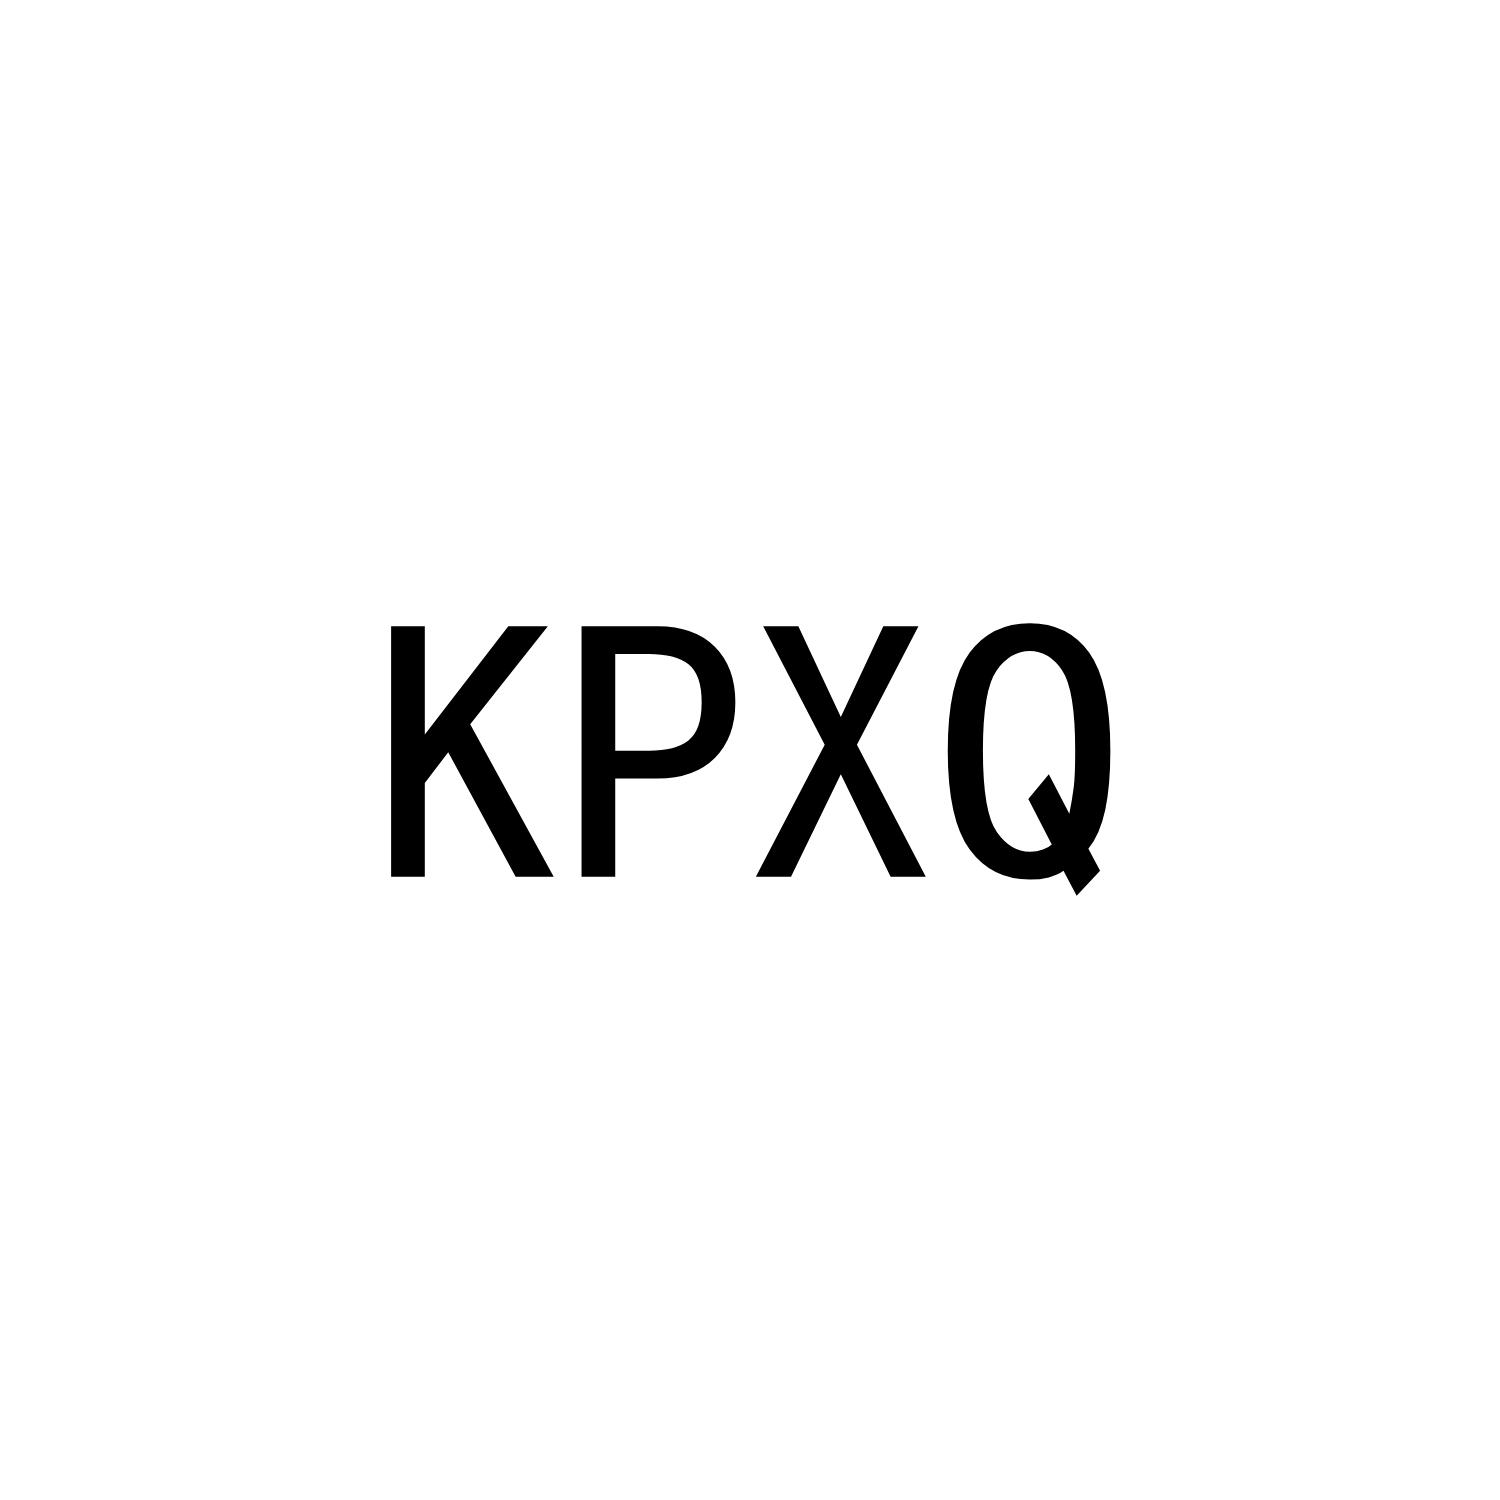 KPXQ